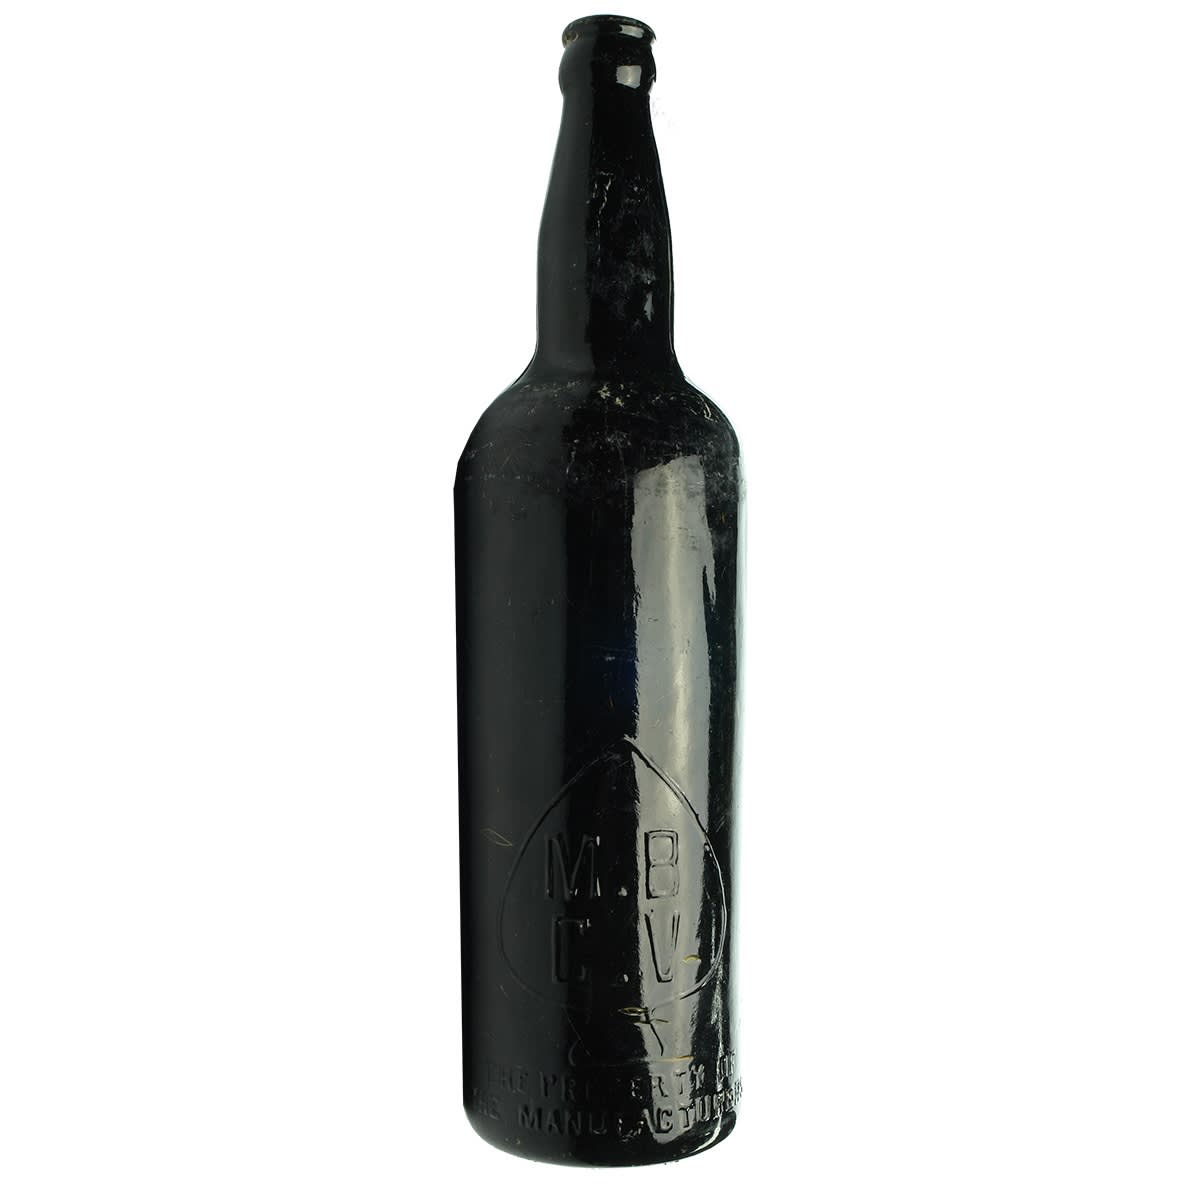 Beer. M. B. C. V. Crown Seal. Shouldered. Black. 26 oz. (Victoria)